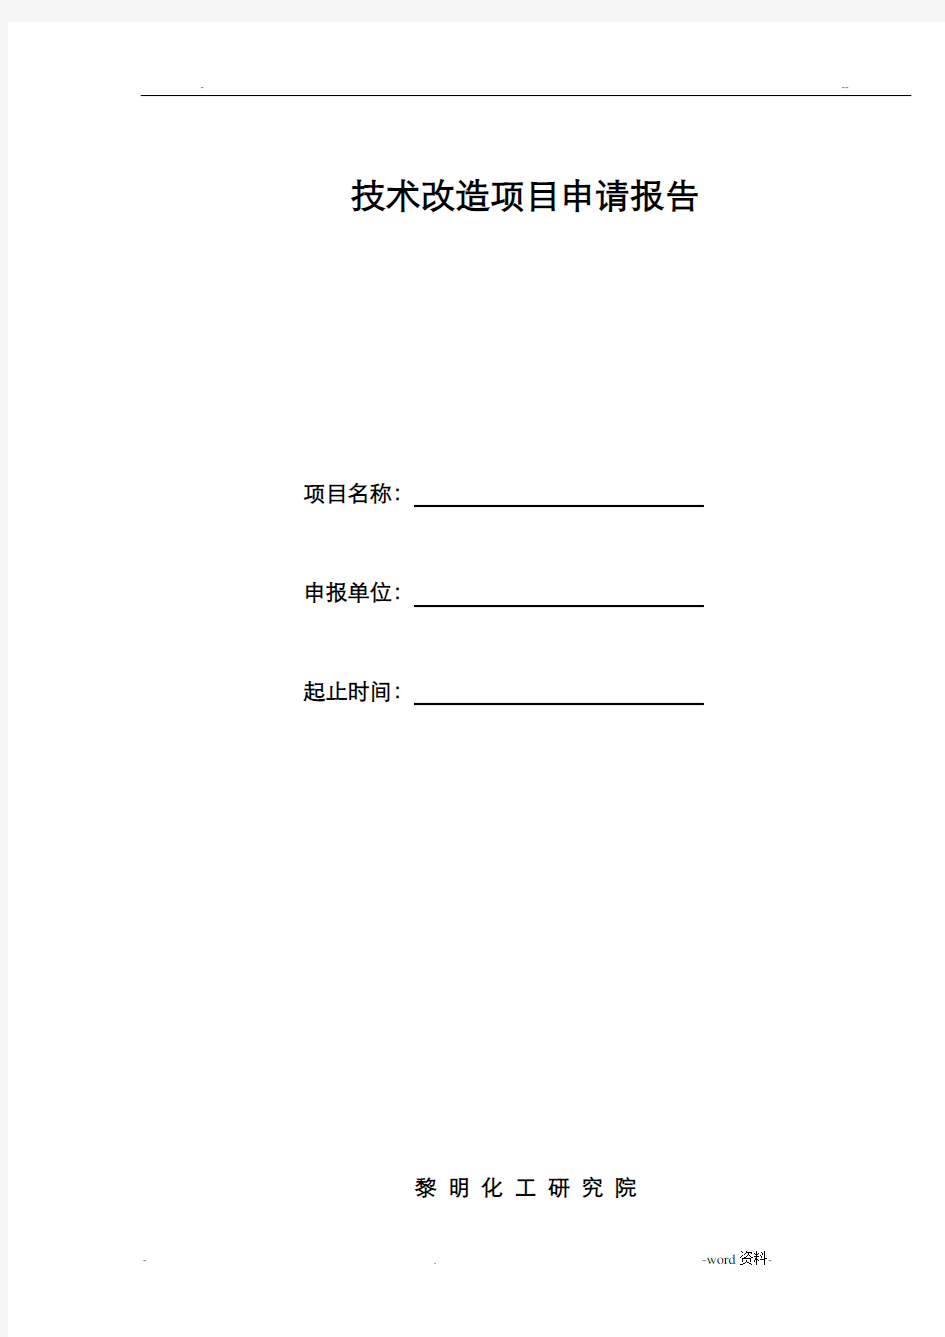 技术改造项目申请报告表(A4纸)